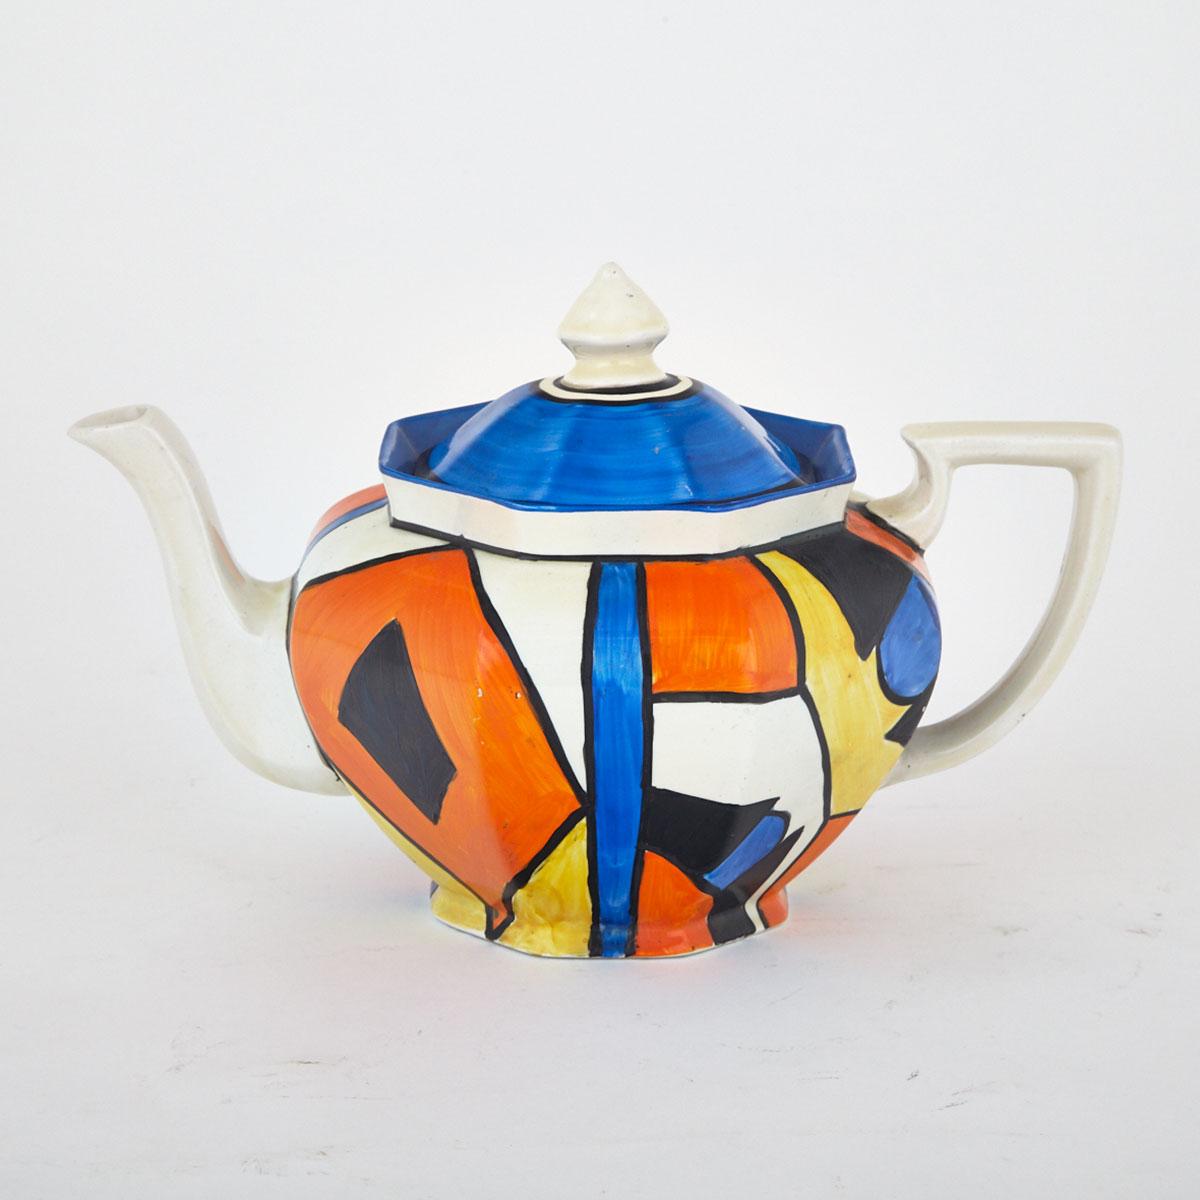 Clarice Cliff ‘Bizzare’ Teapot, c.1930